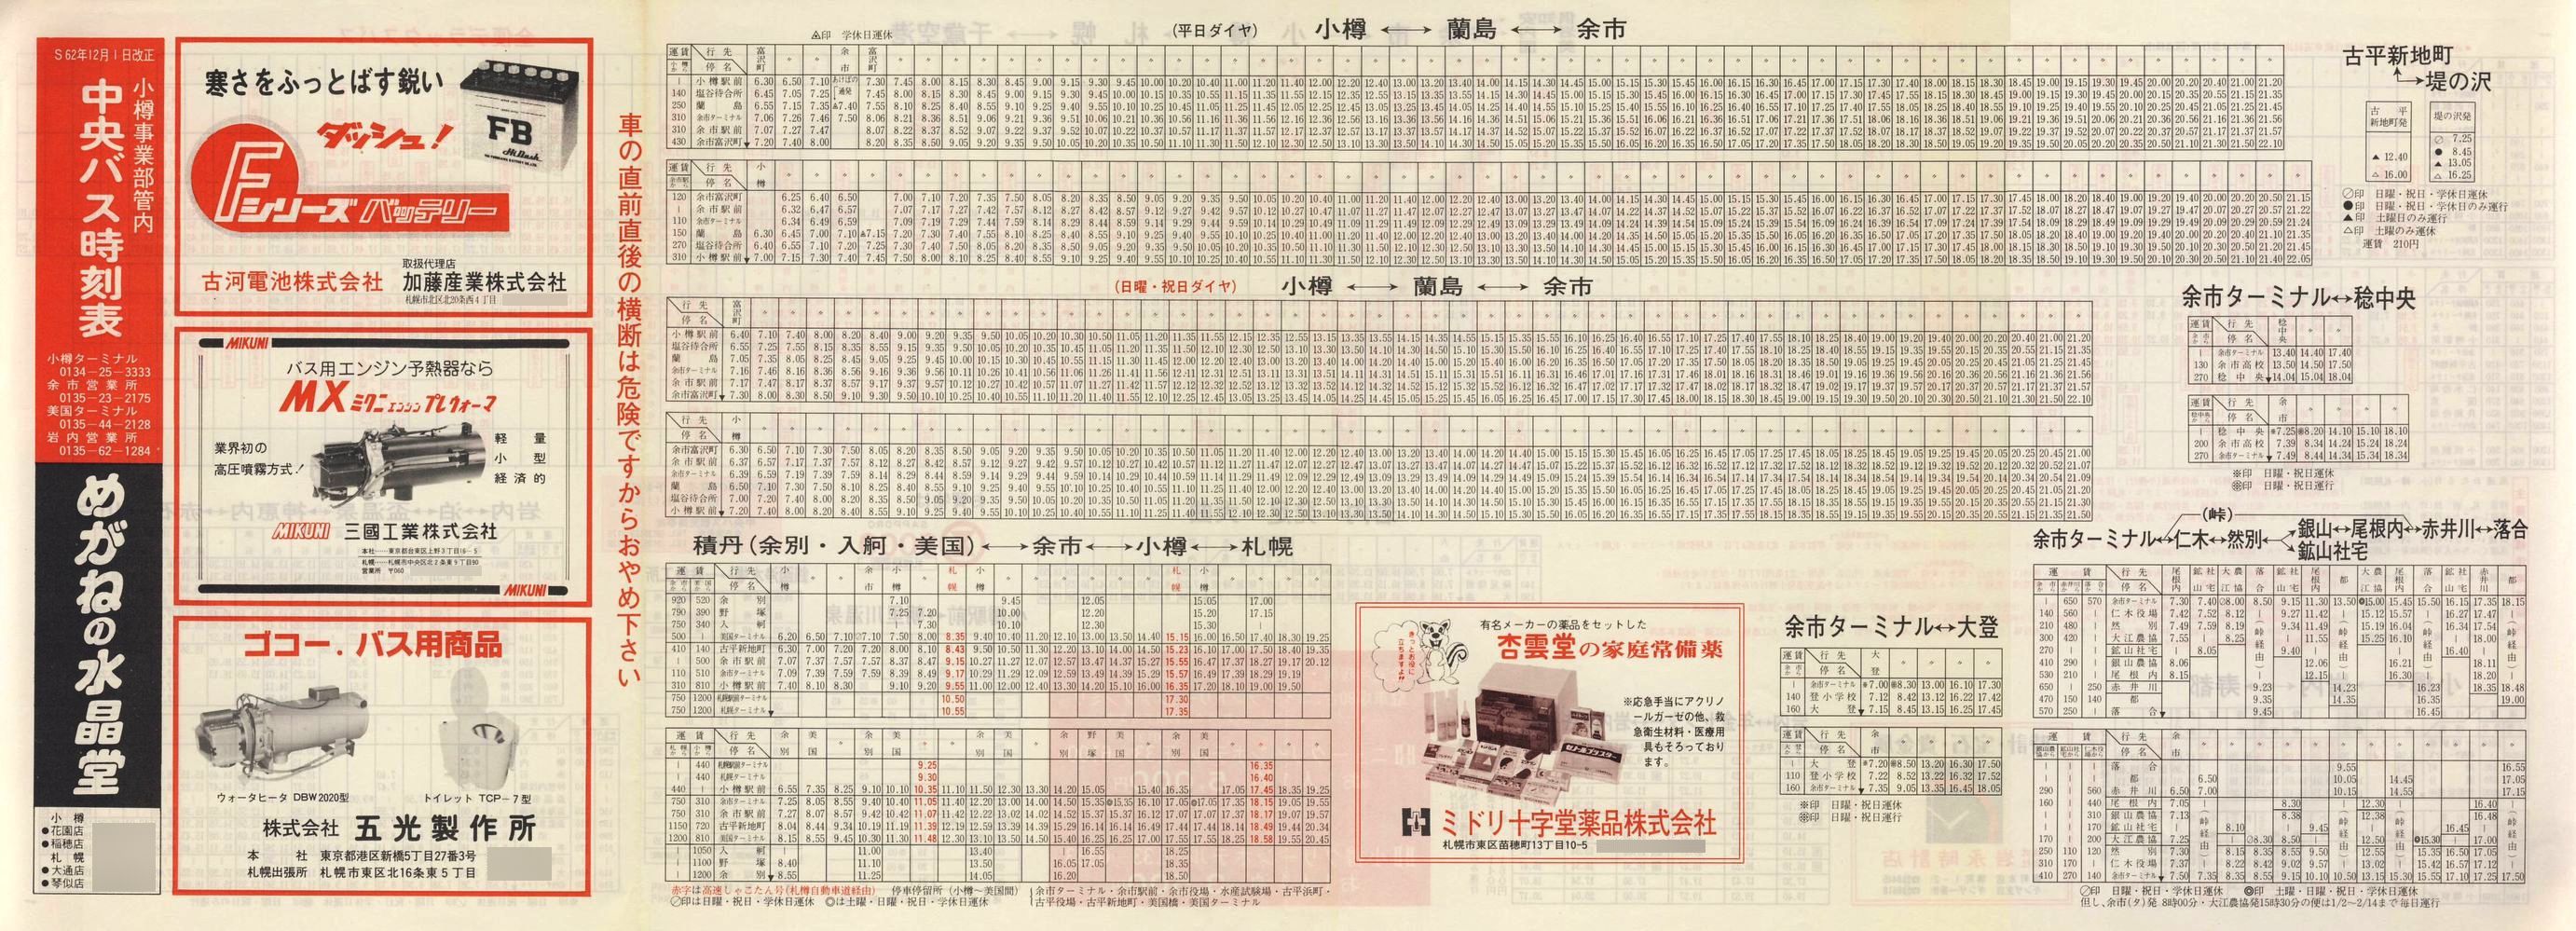 1987-12-01改正_北海道中央バス(小樽)_小樽事業部管内郊外線時刻表表面